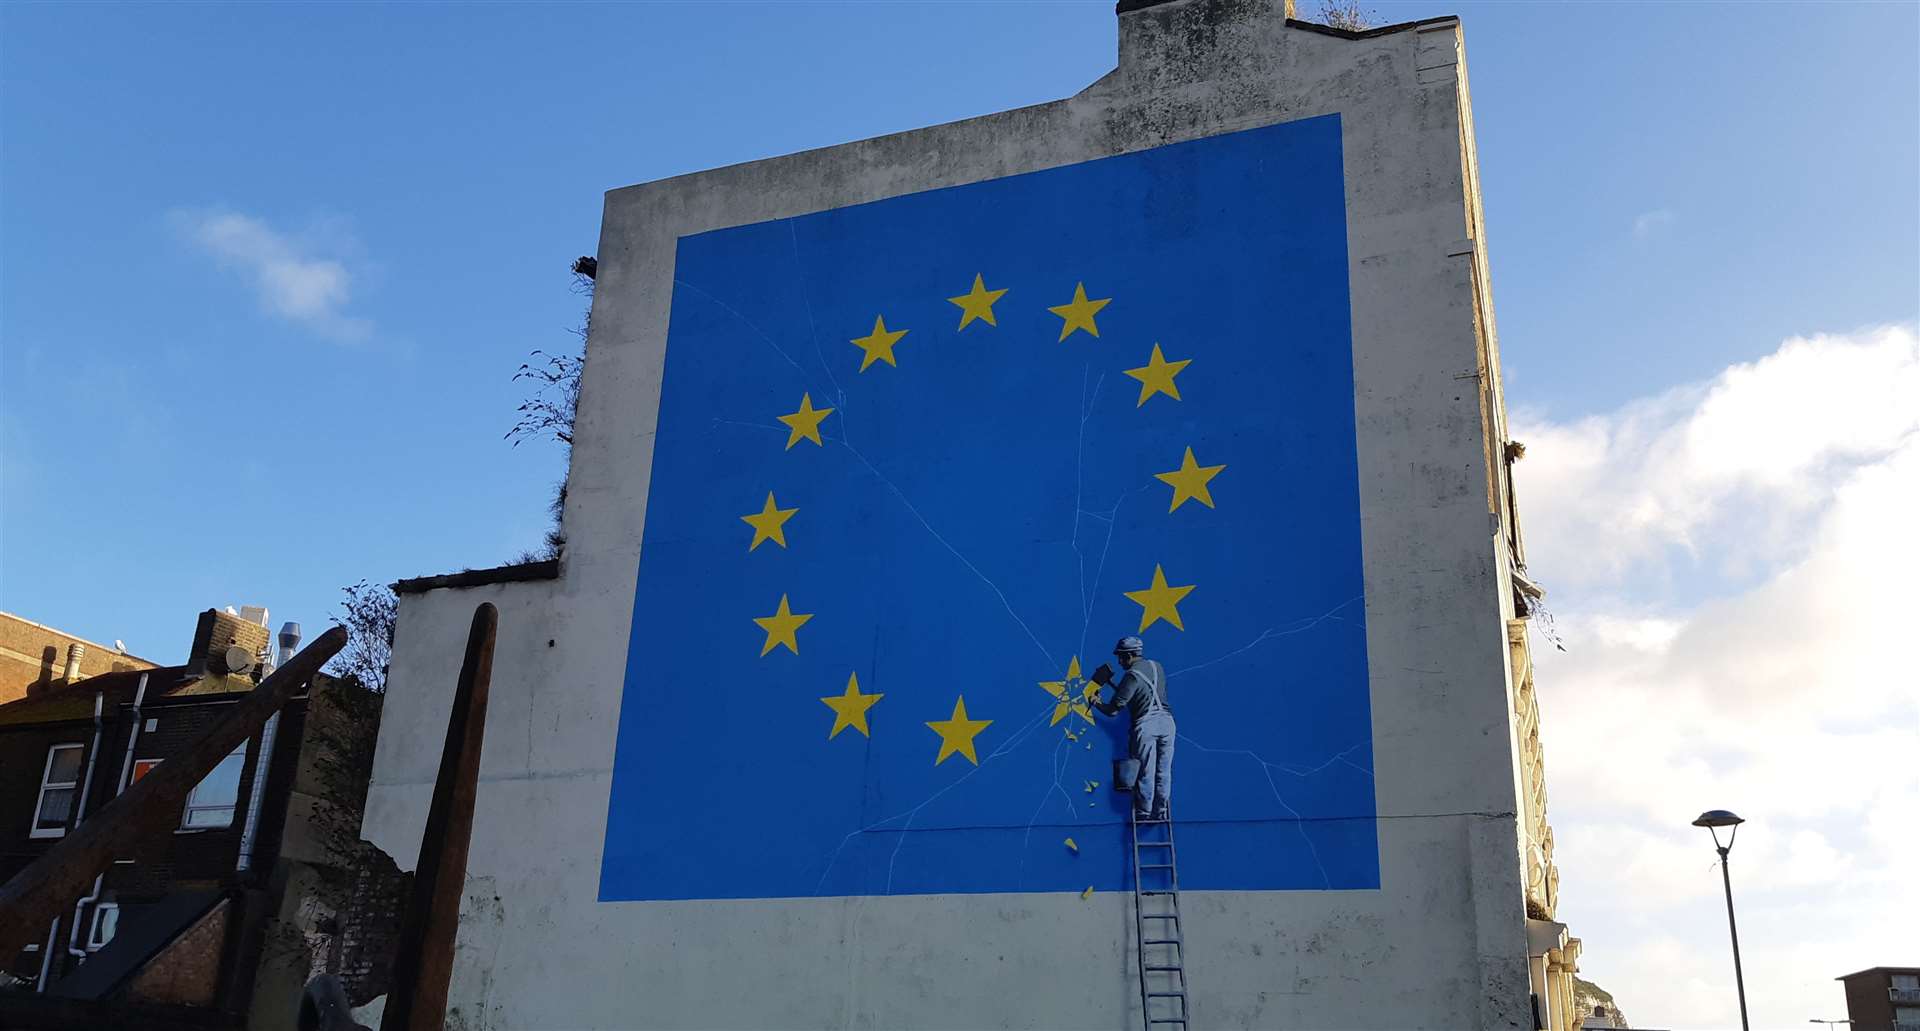 The Banksy mural in Dover